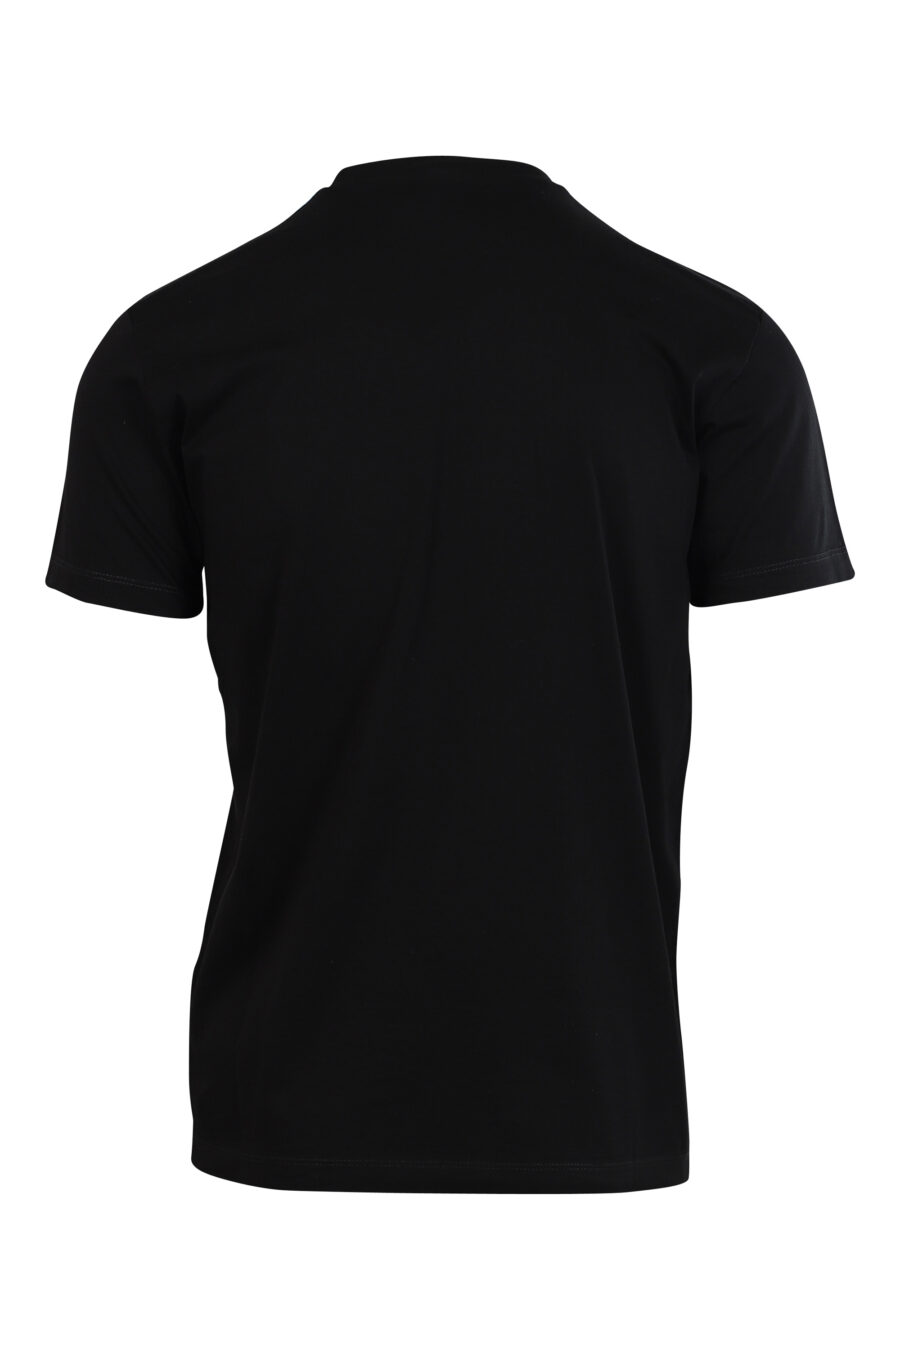 T-shirt preta com maxilogo "universidade" branco - 8052134945810 2